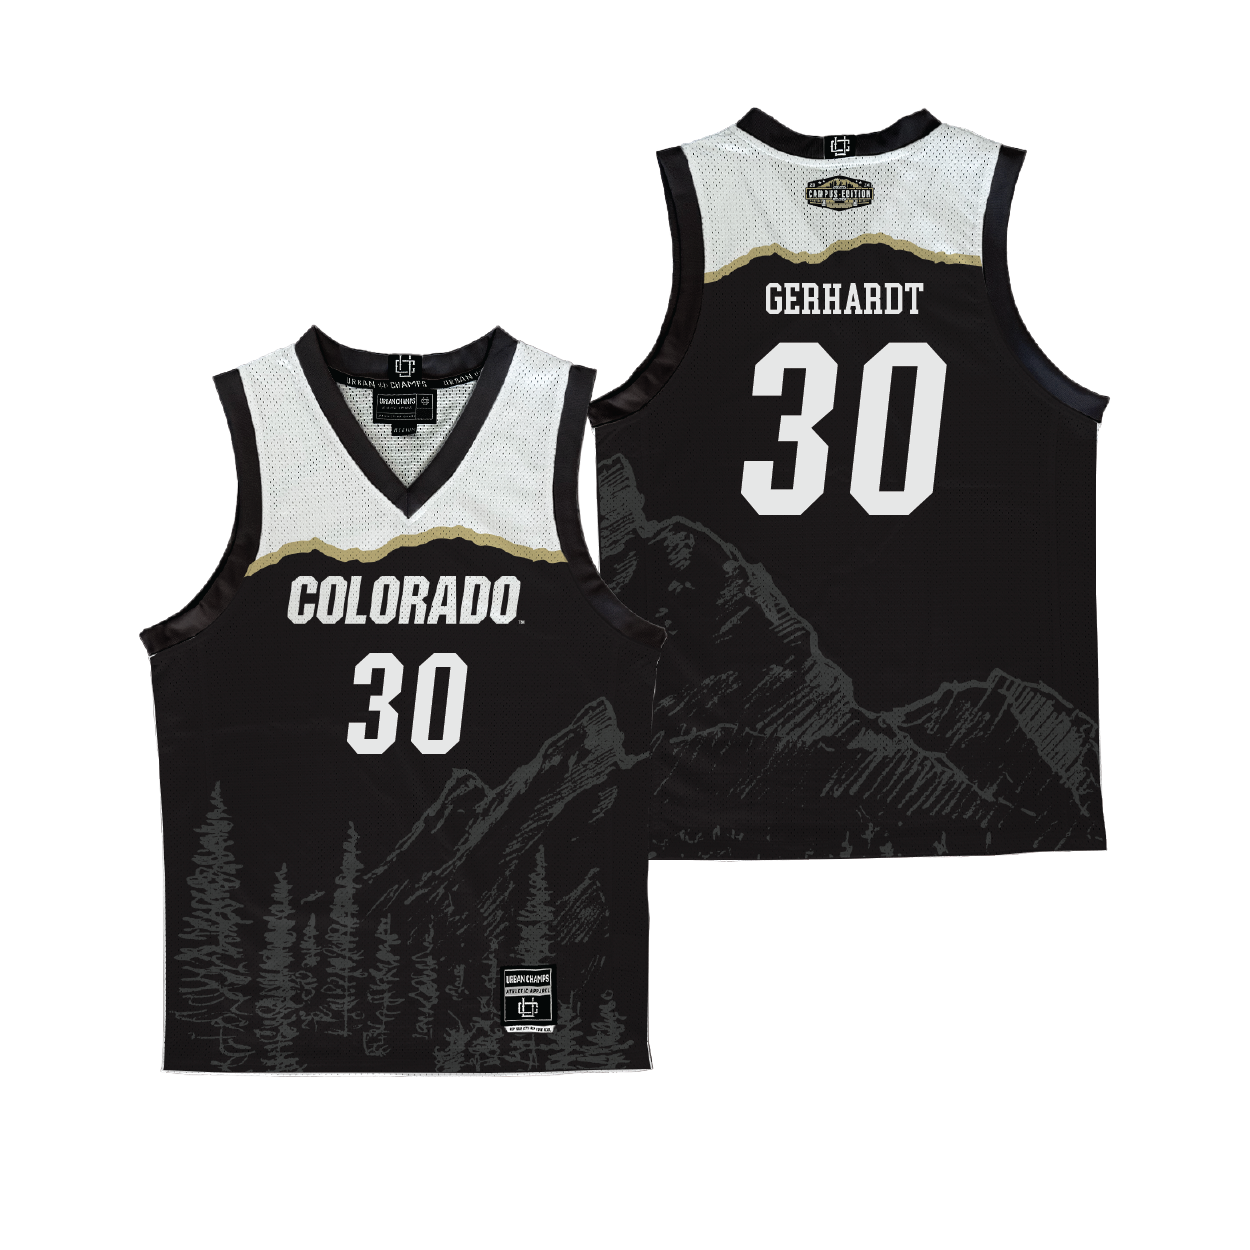 Colorado Campus Edition NIL Jersey - Gregory Gerhardt | #30